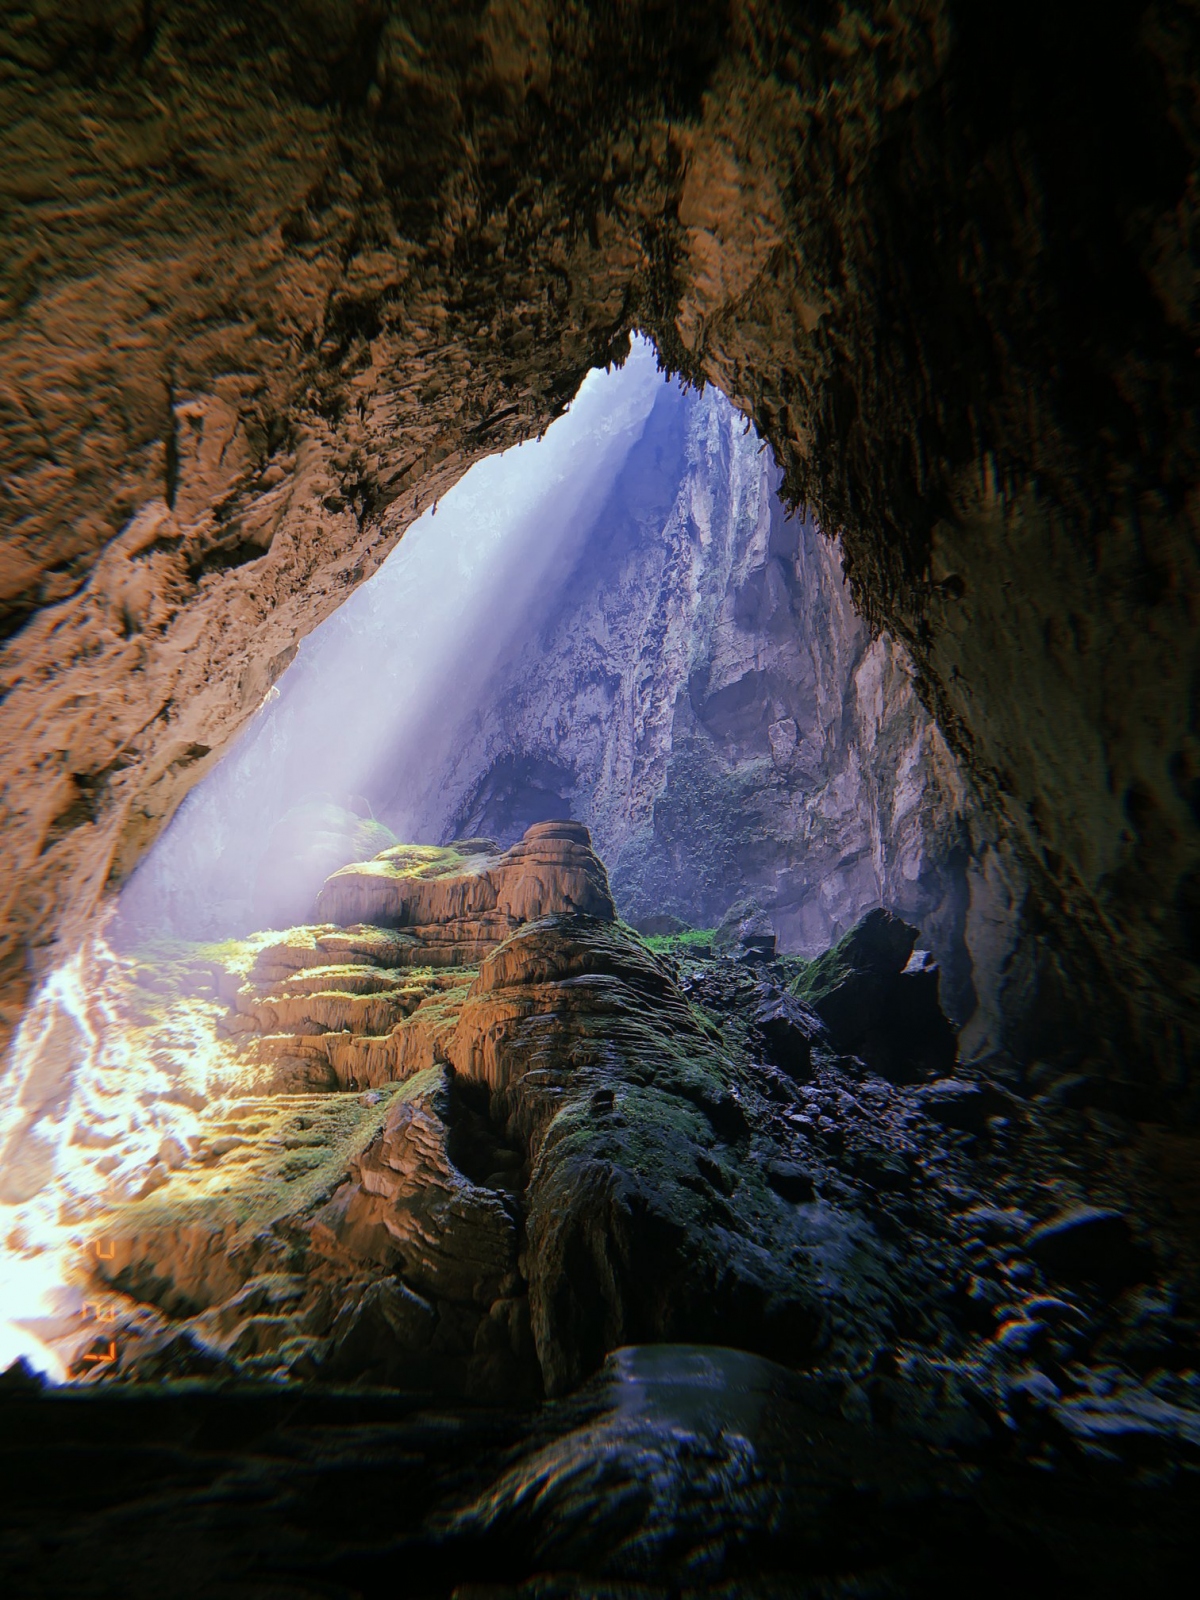 Hình ảnh Vọng Khủng Long trong hang Sơn Đoòng tuyệt đẹp